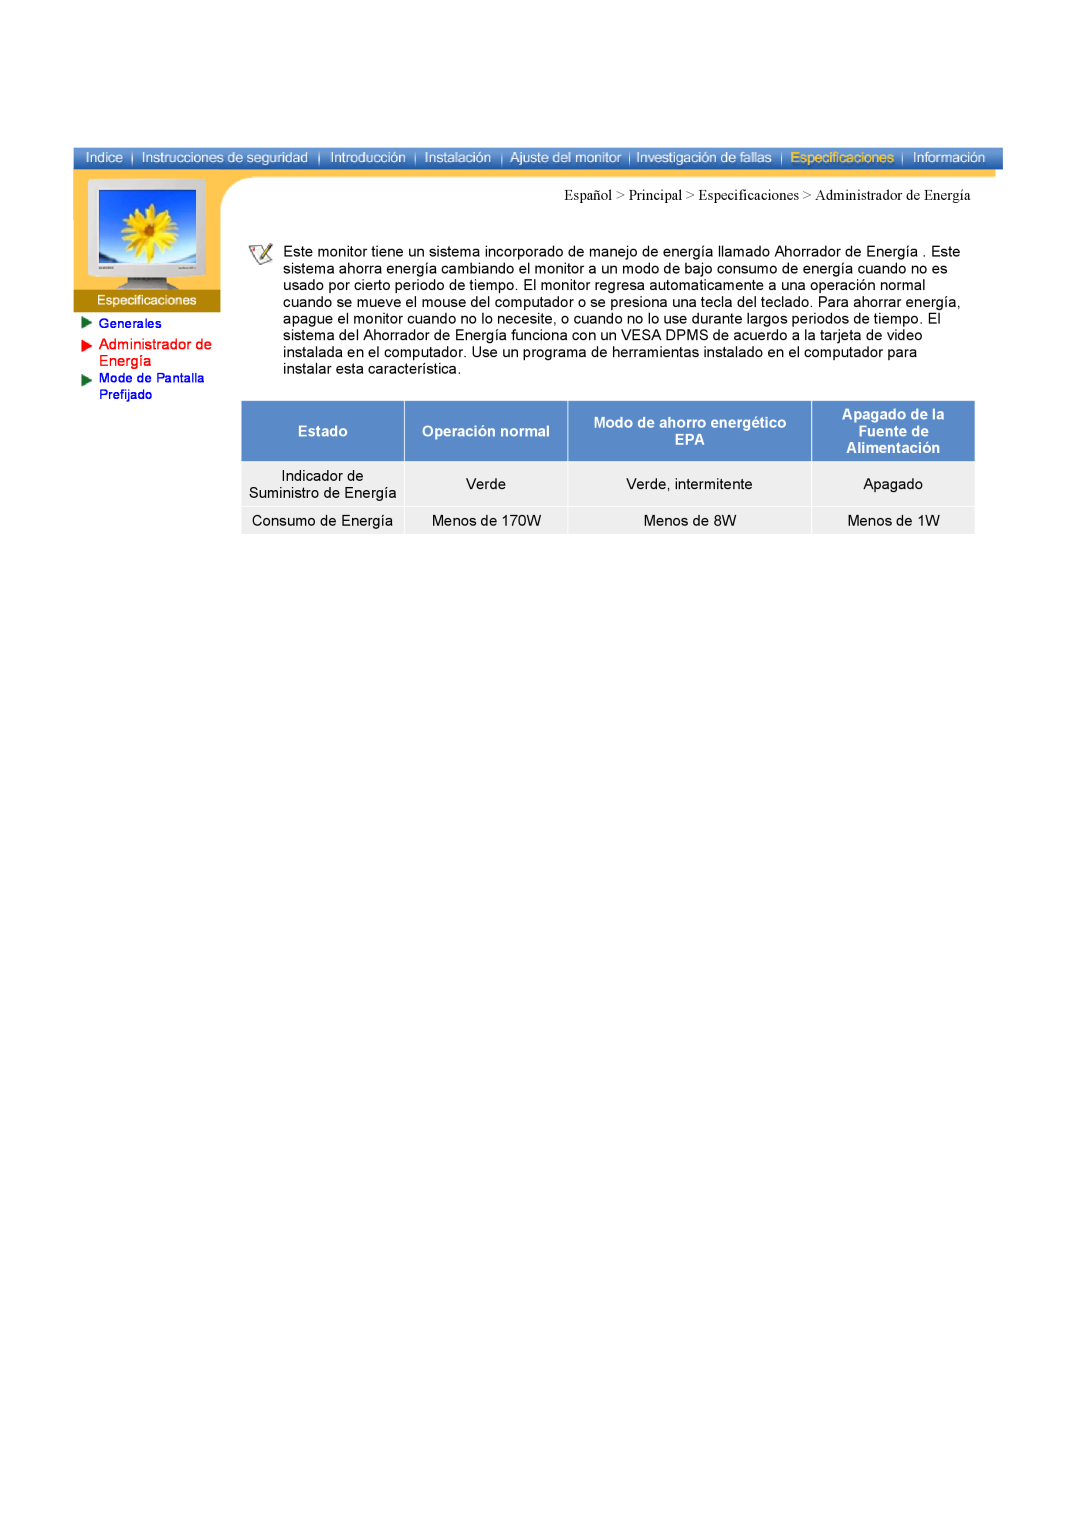 Samsung CK40PSNS/EDC manual Español Principal Especificaciones Administrador de Energía, Modo de ahorro energético 